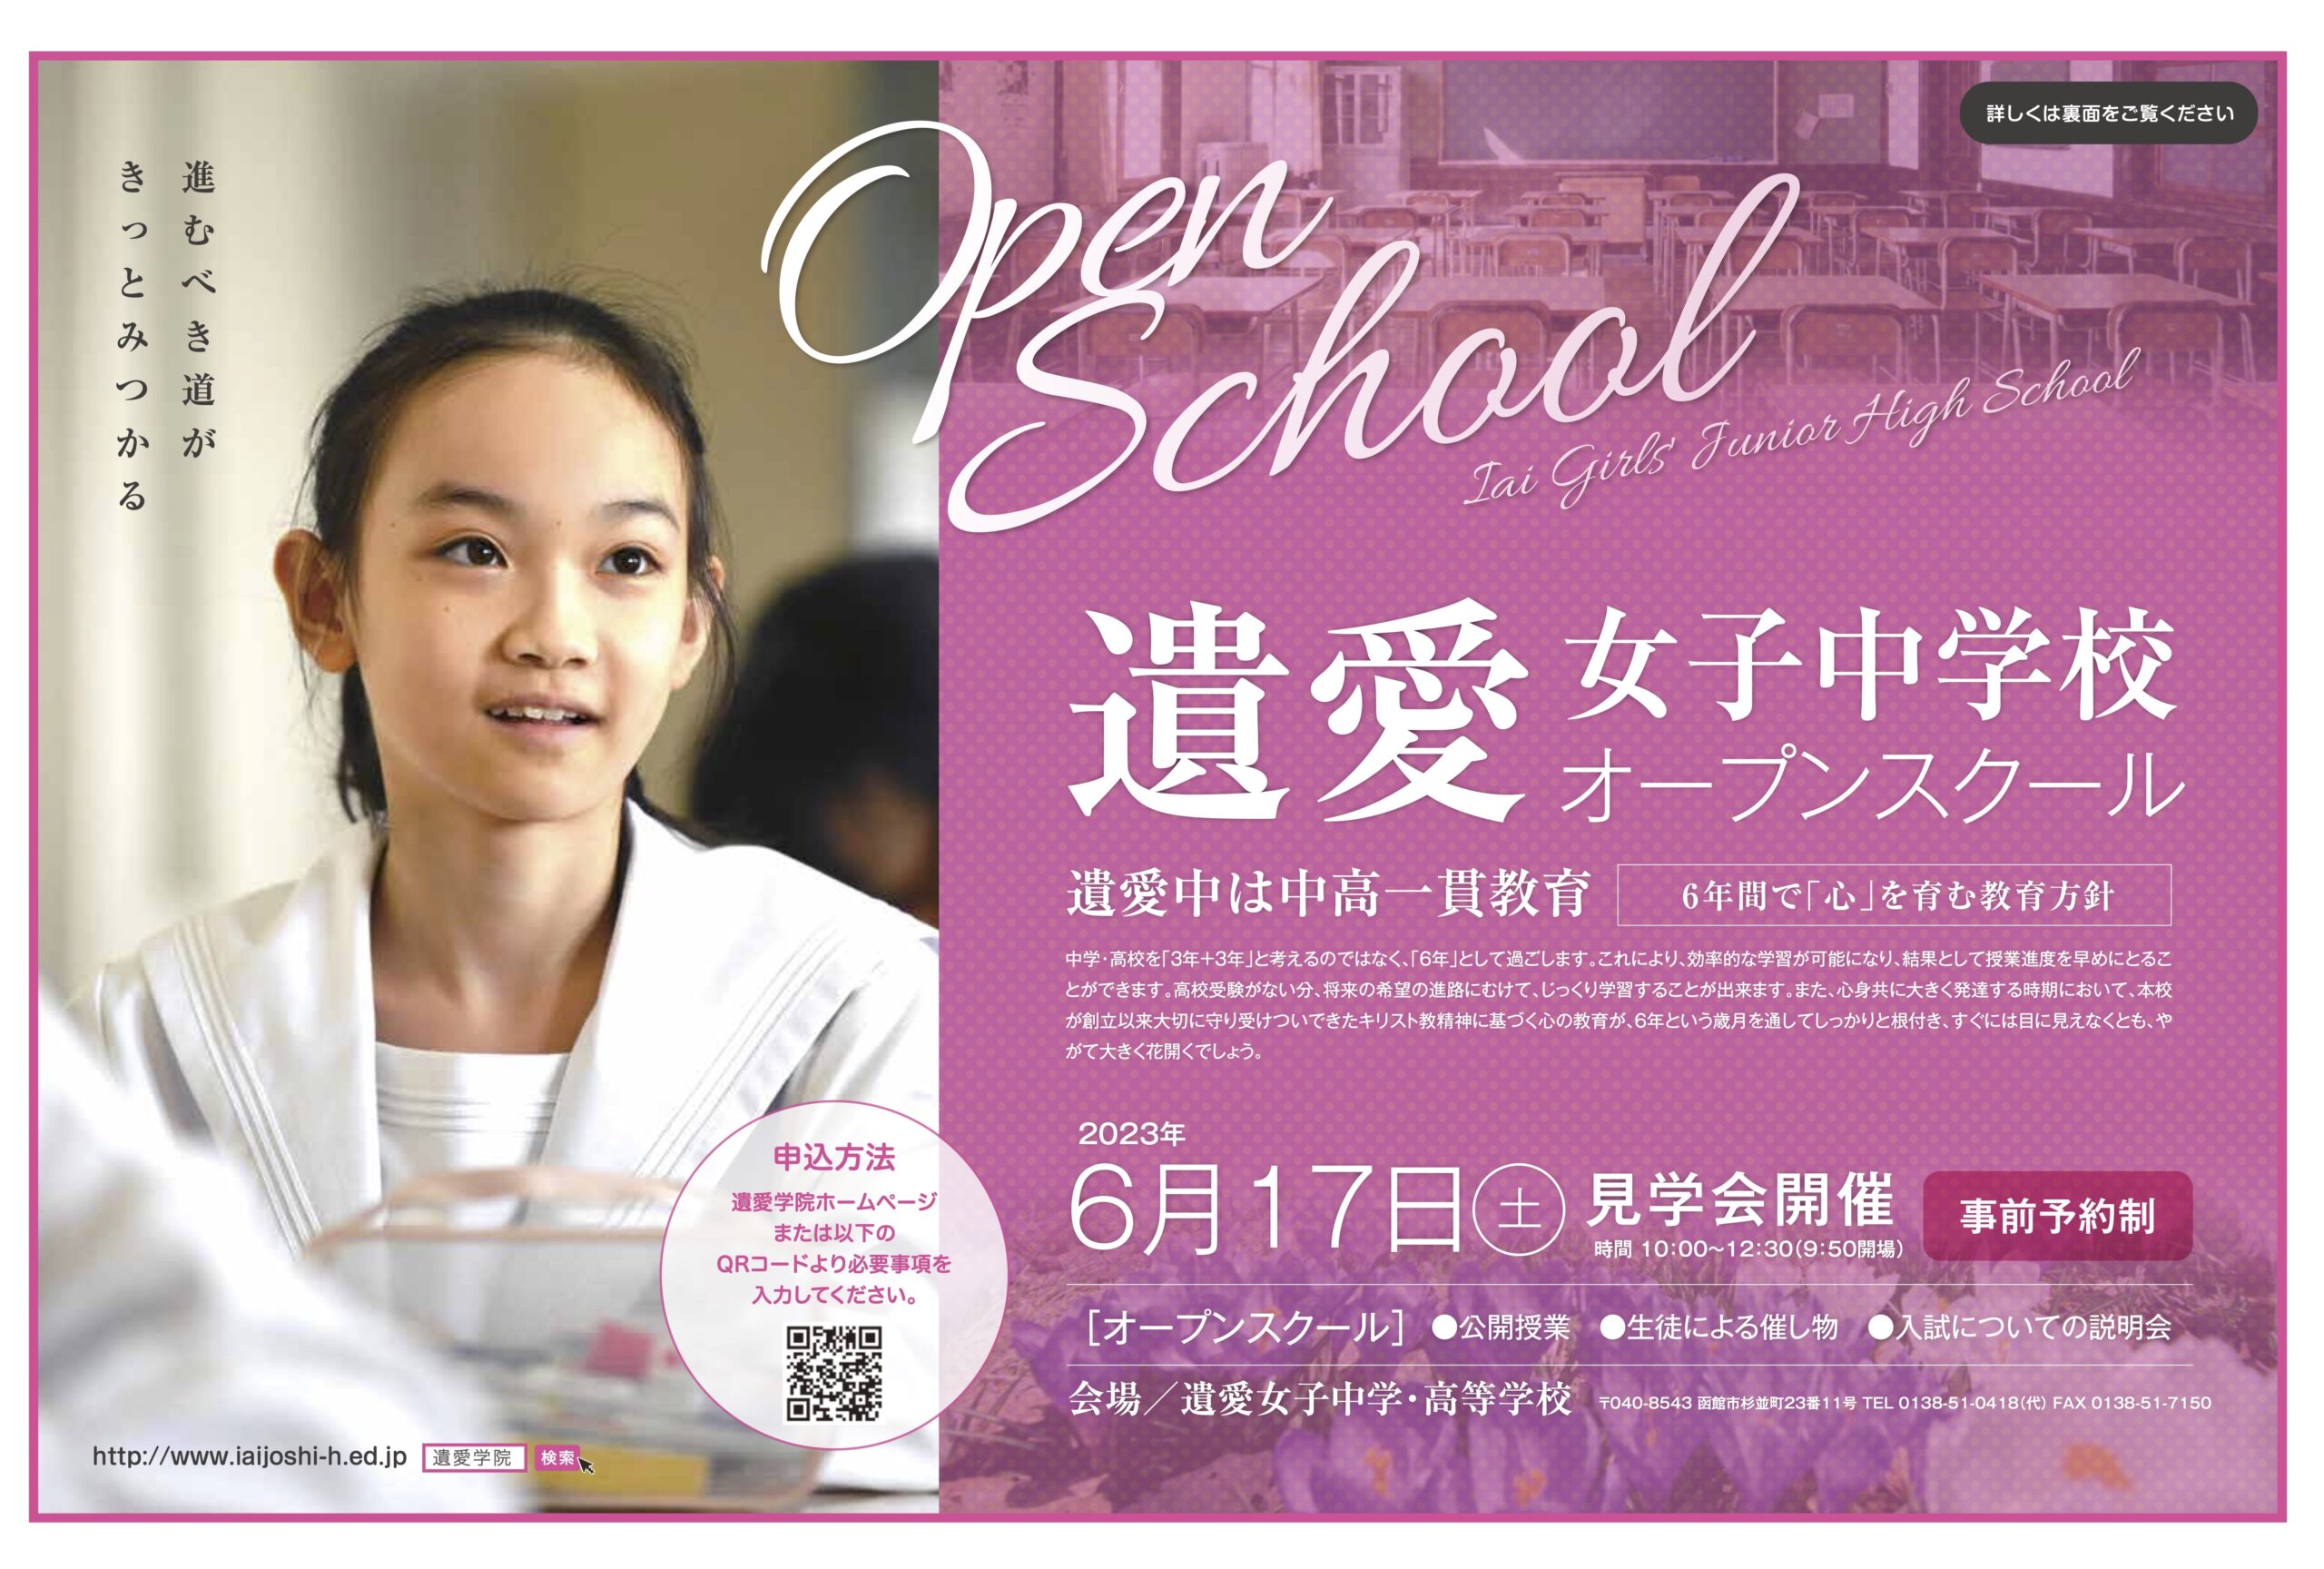 遺愛女子中学校オープンスクール申し込み受付中です‼️6月17日（土）10時より開催いたします。